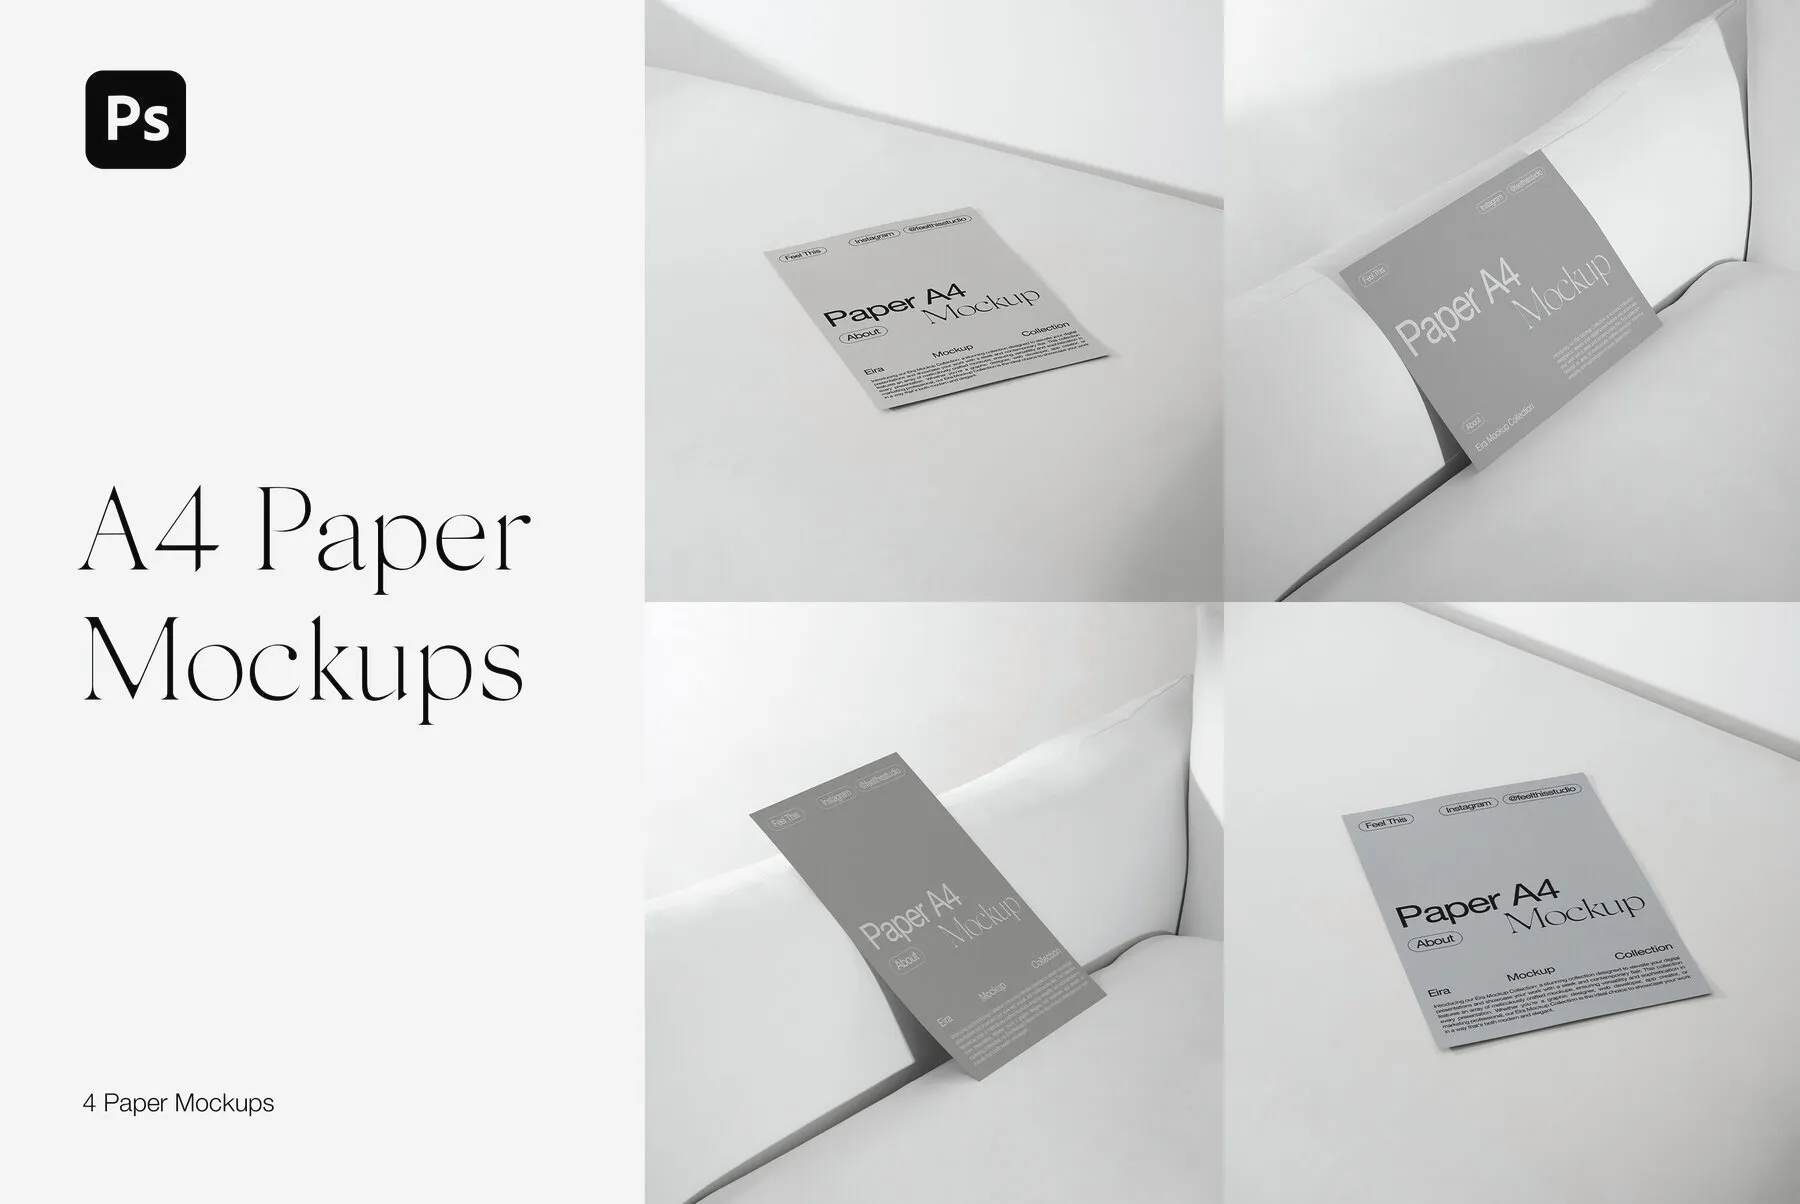 A4 Paper Mockups